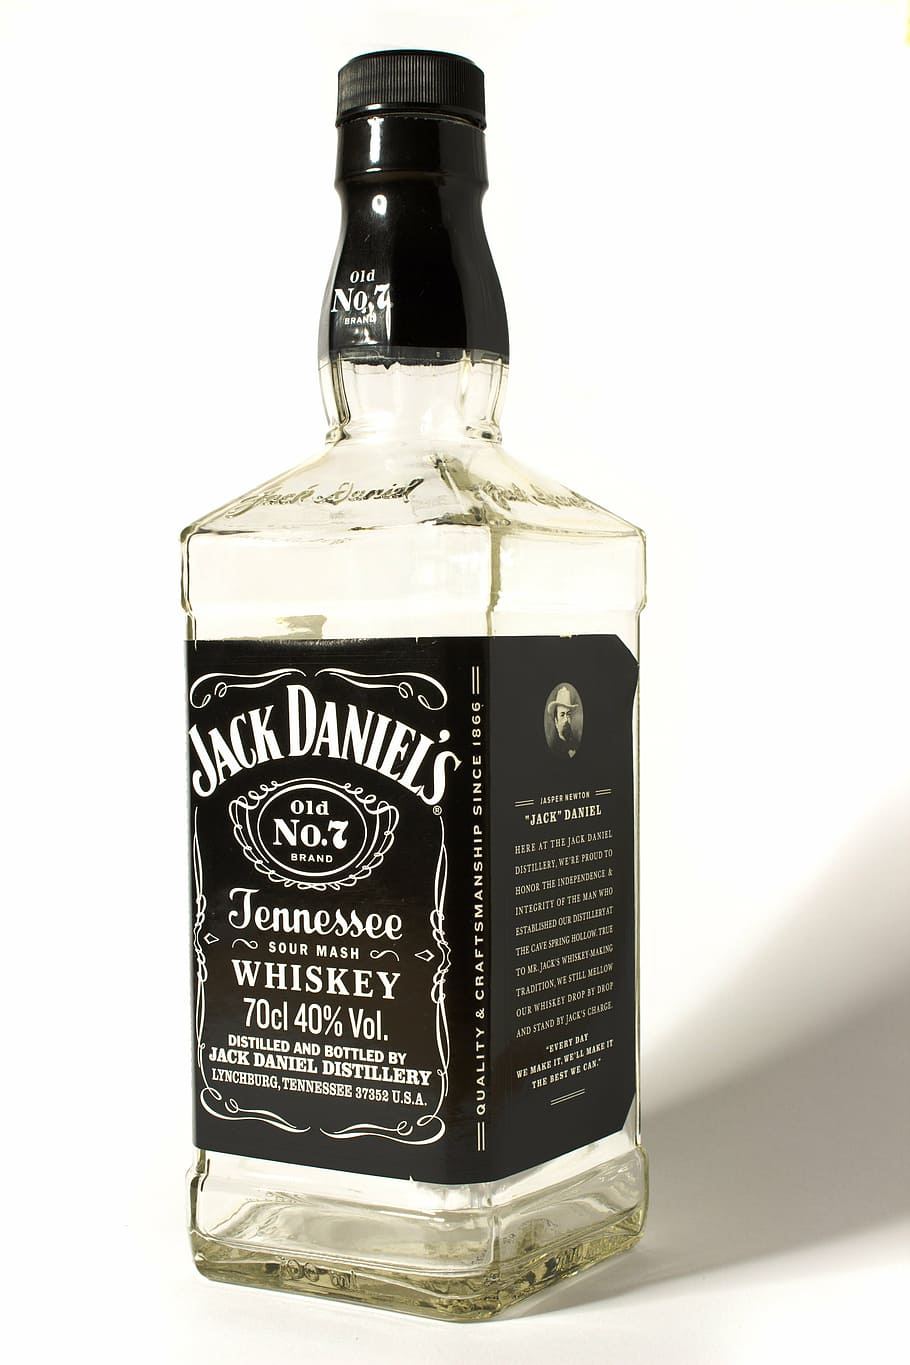 ジャック, ダニエル, ウイスキーボトル, アルコール, ウイスキー, ジャックダニエルズ, ボトル, アルコール依存症, ウイスキーサワー, バー